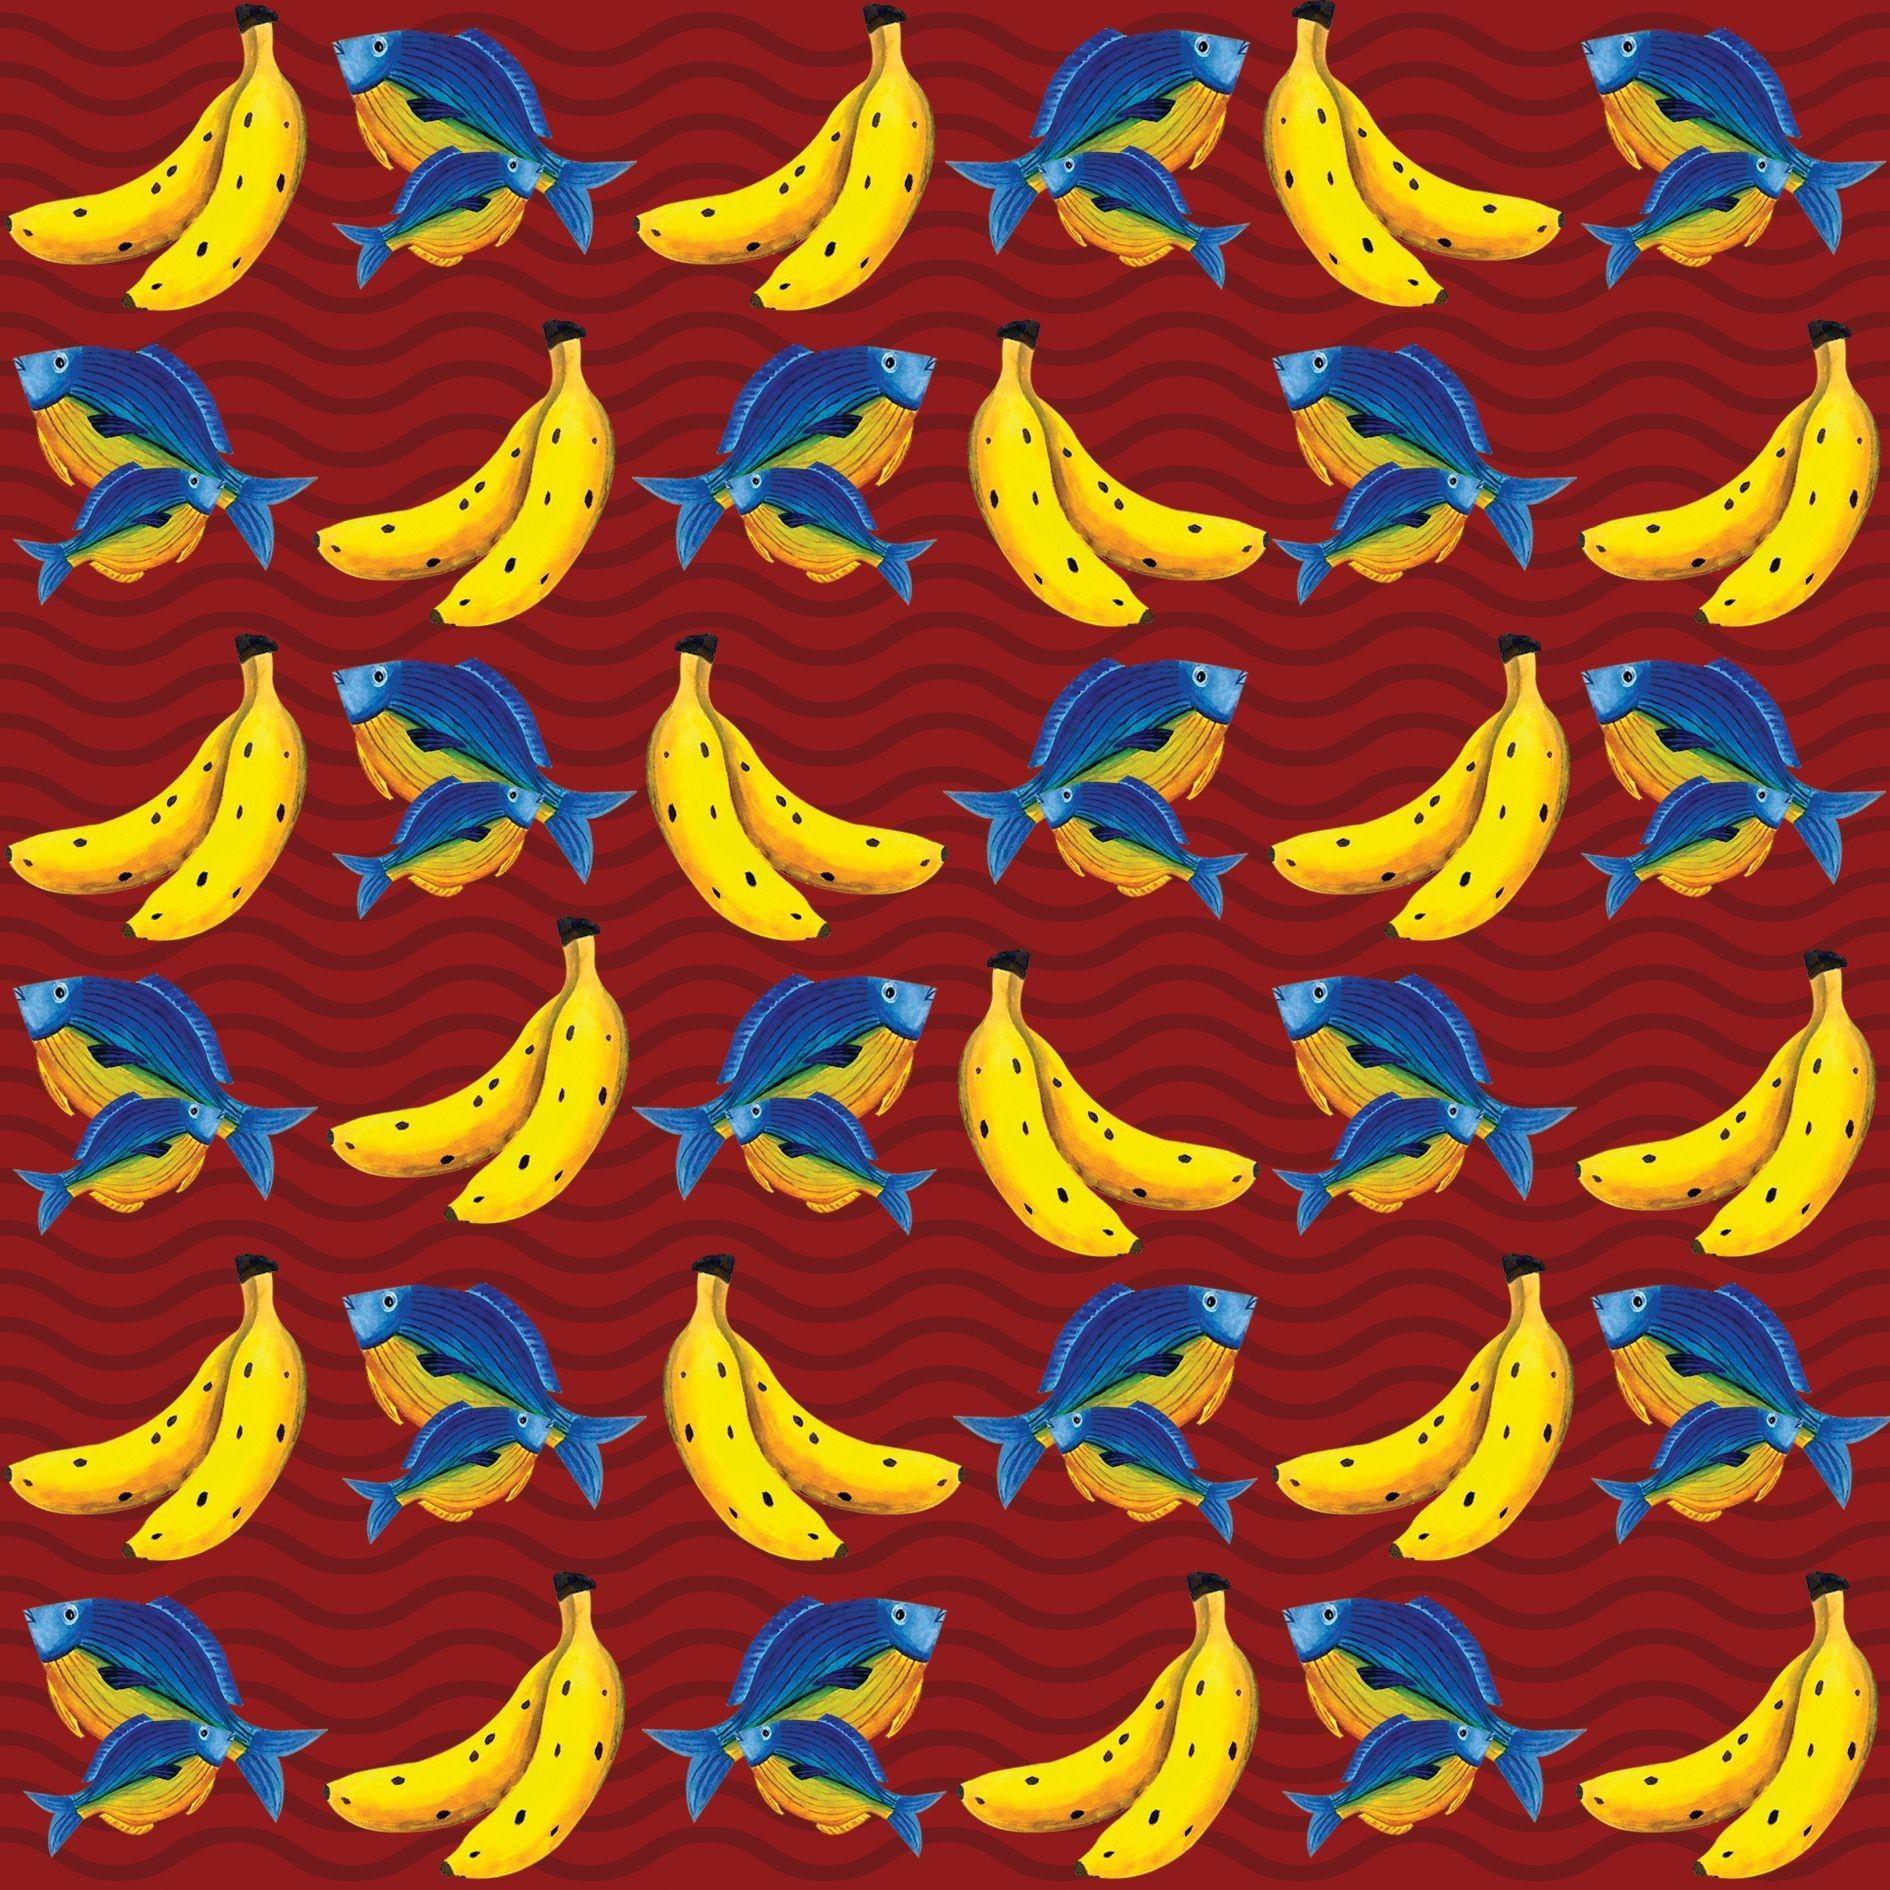 1890 x 1890 · jpeg - Banana Fish Wallpapers - Wallpaper Cave